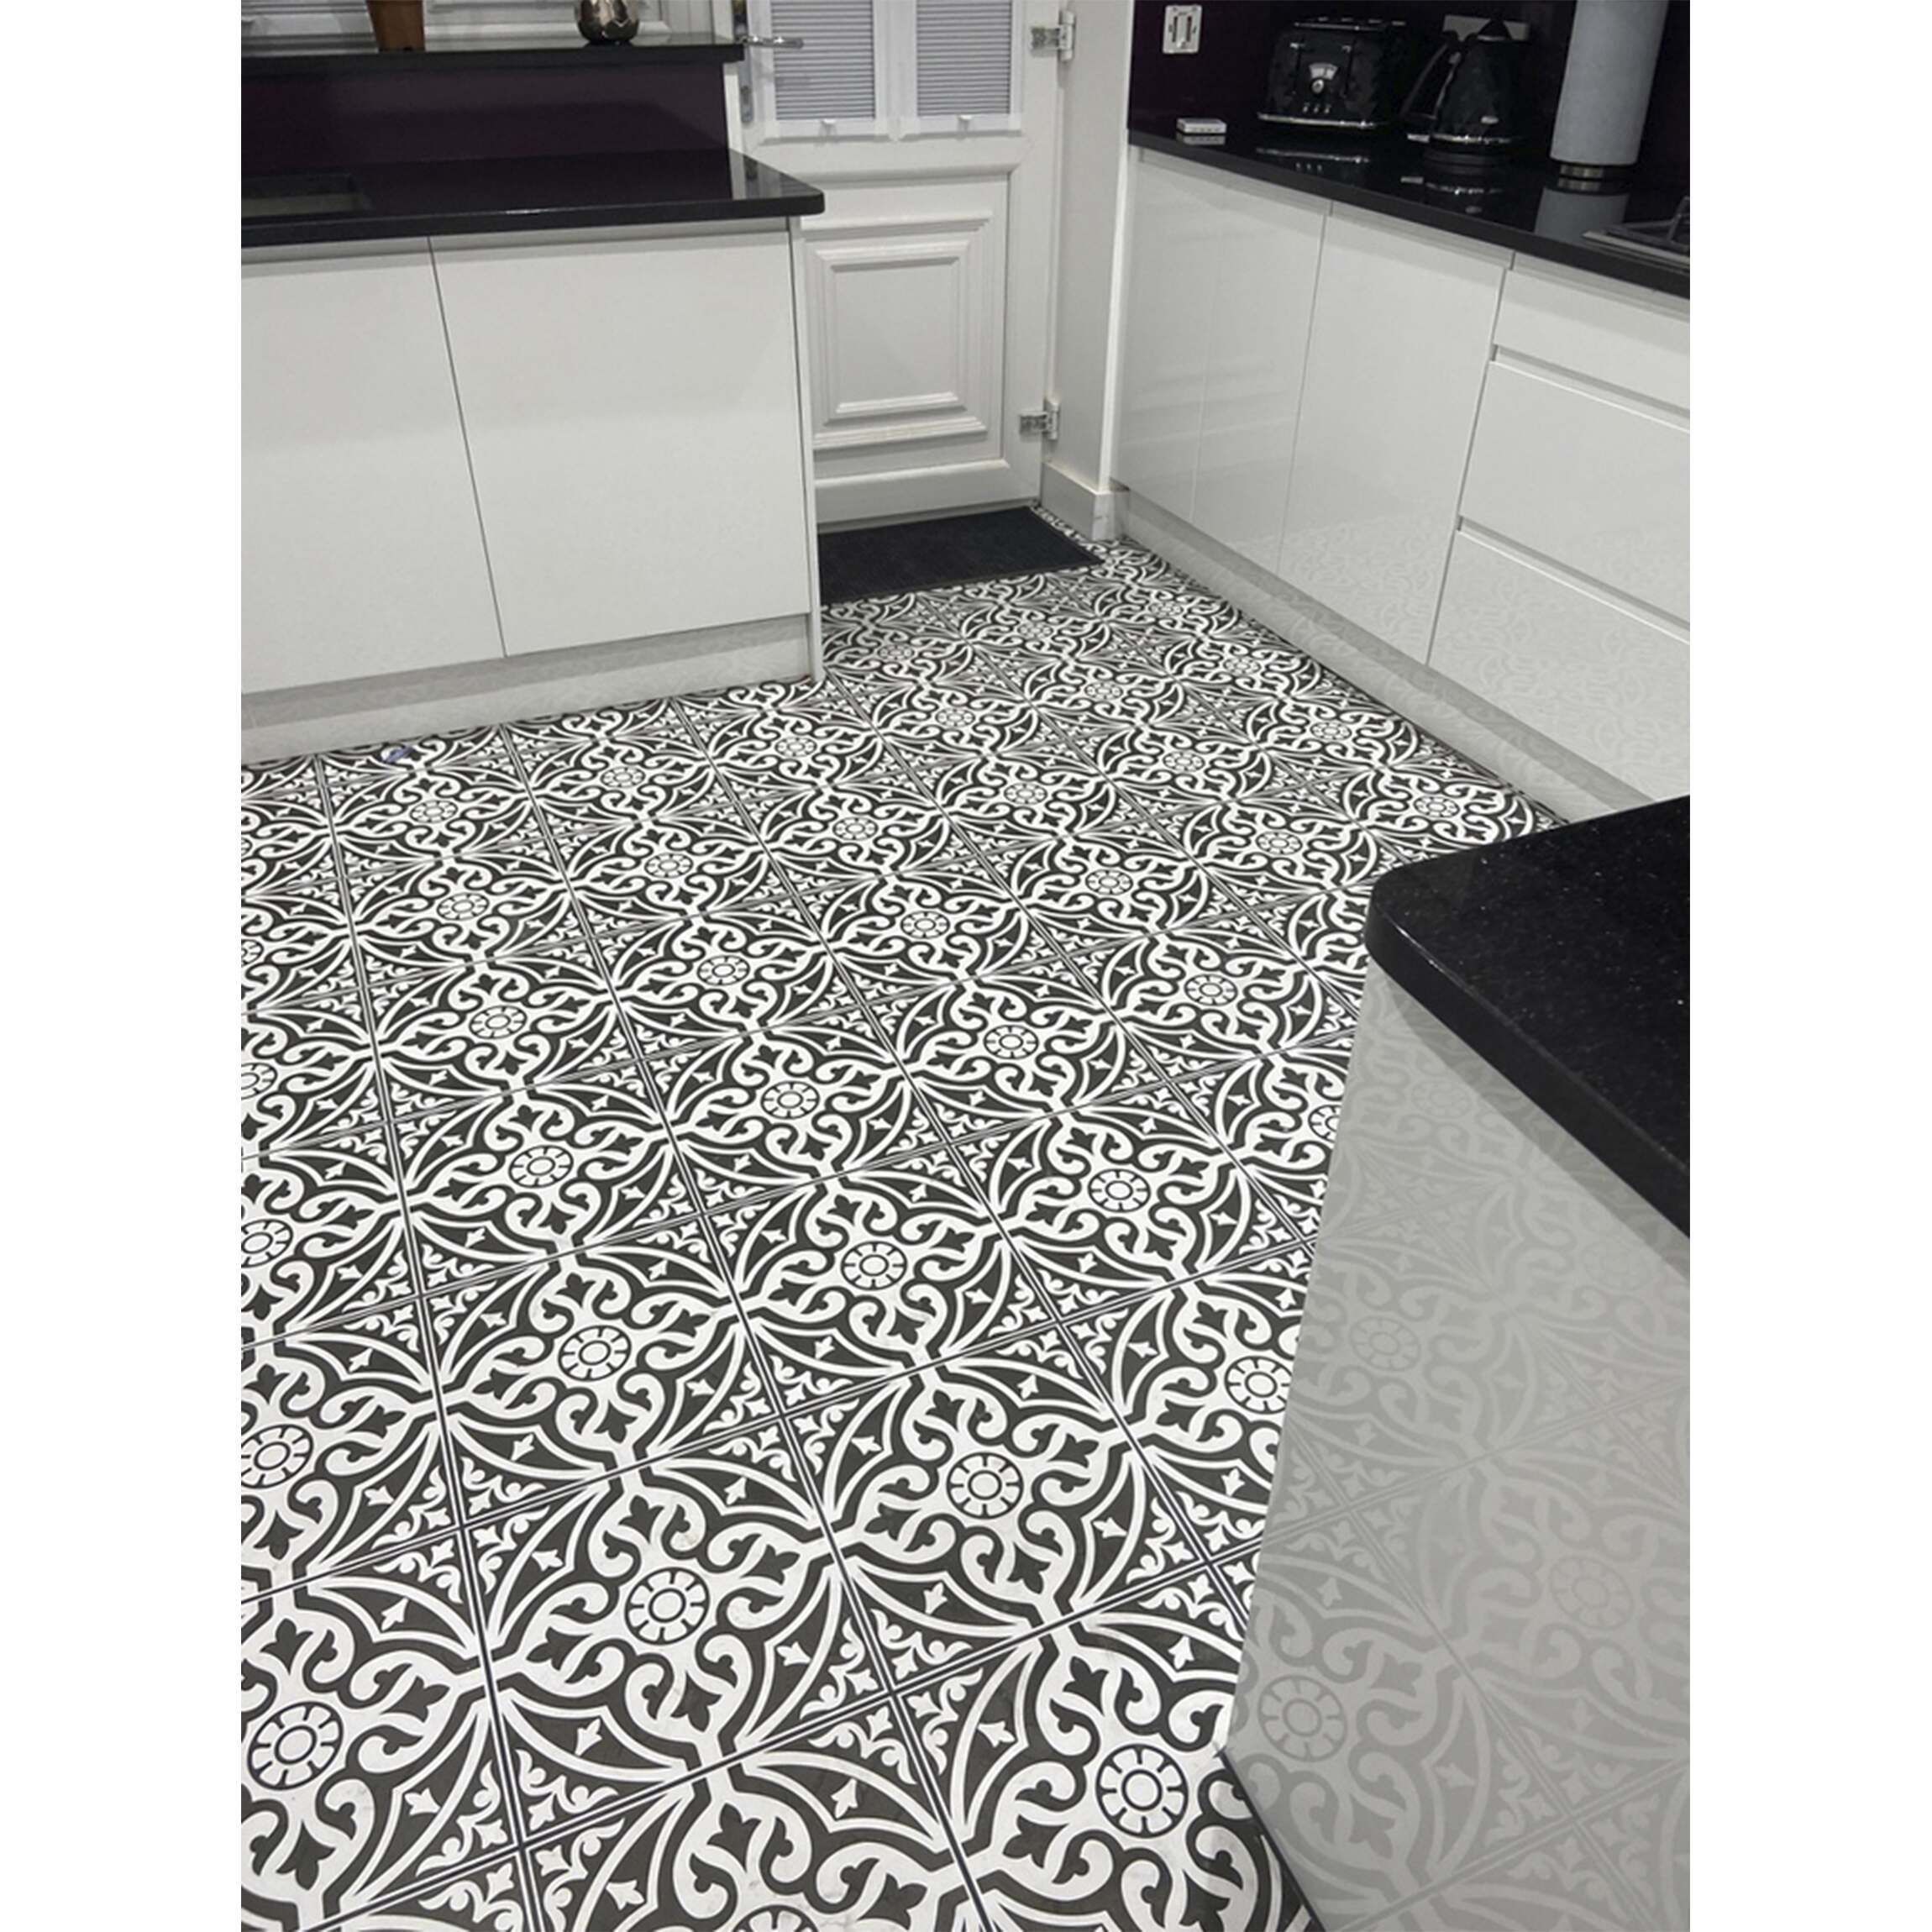 Floor Tile Tiles From Mountain, Patterned Floor Tiles